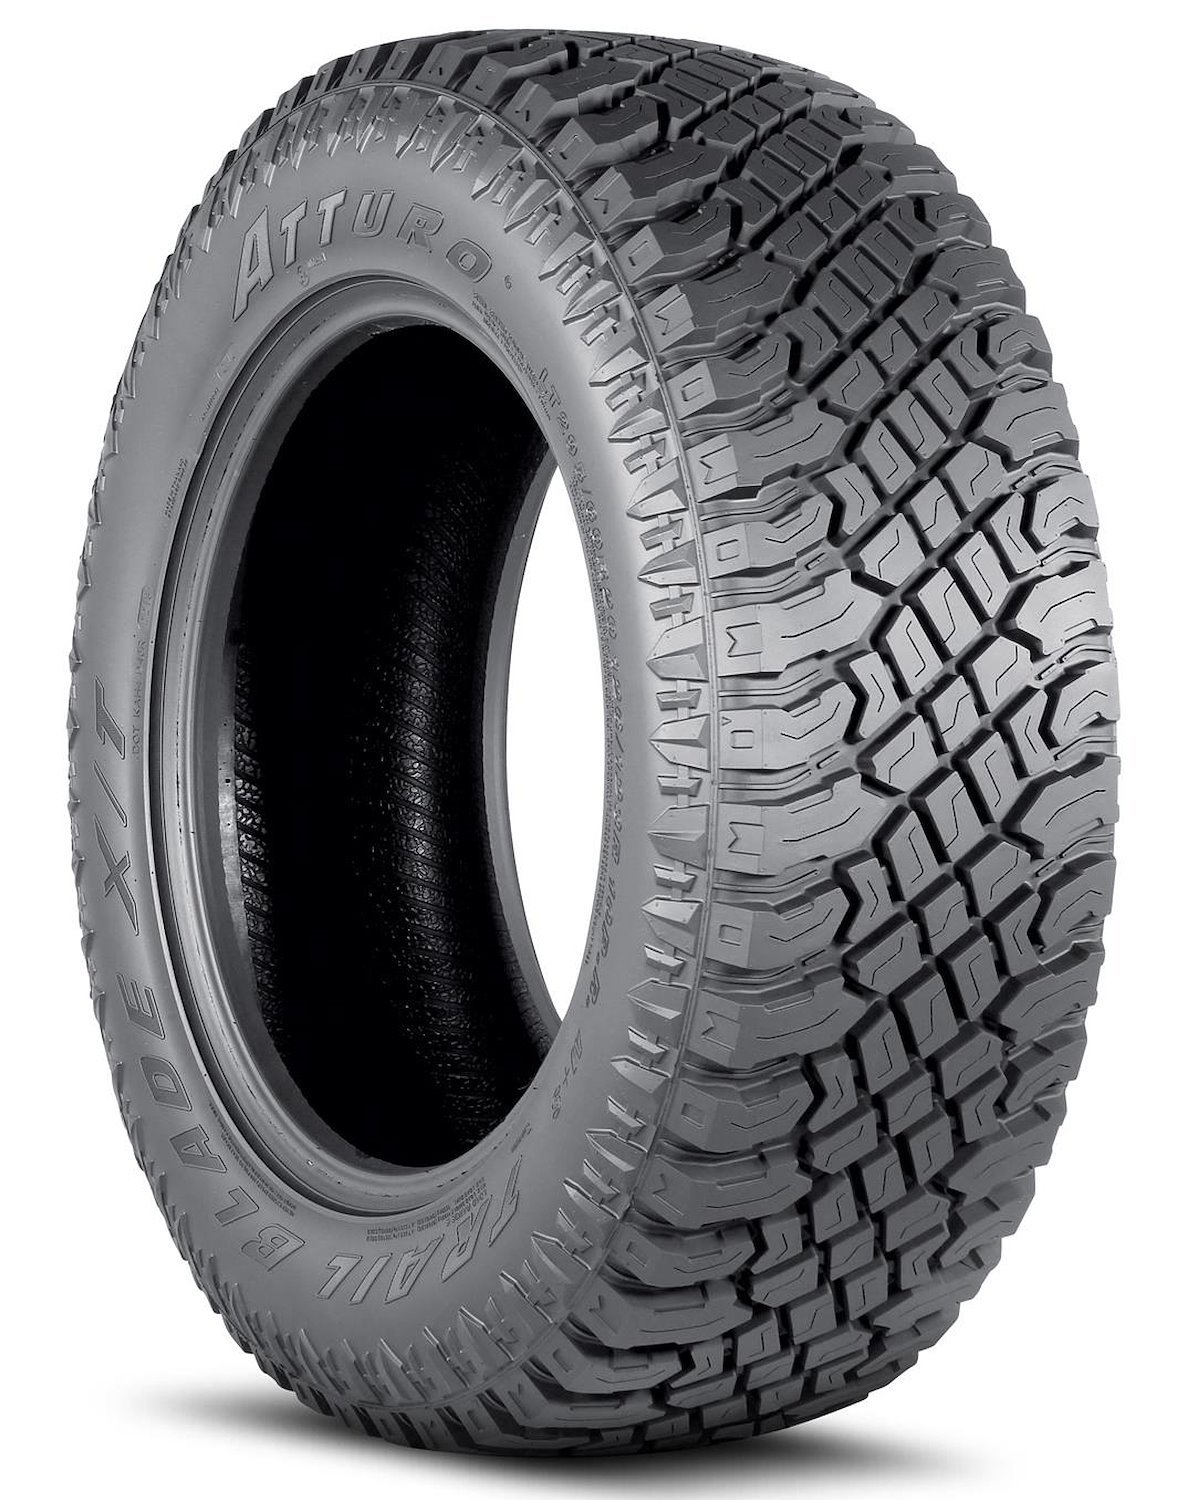 TBXT-KFJR3LA Trail Blade X/T Tire, LT305/55R20